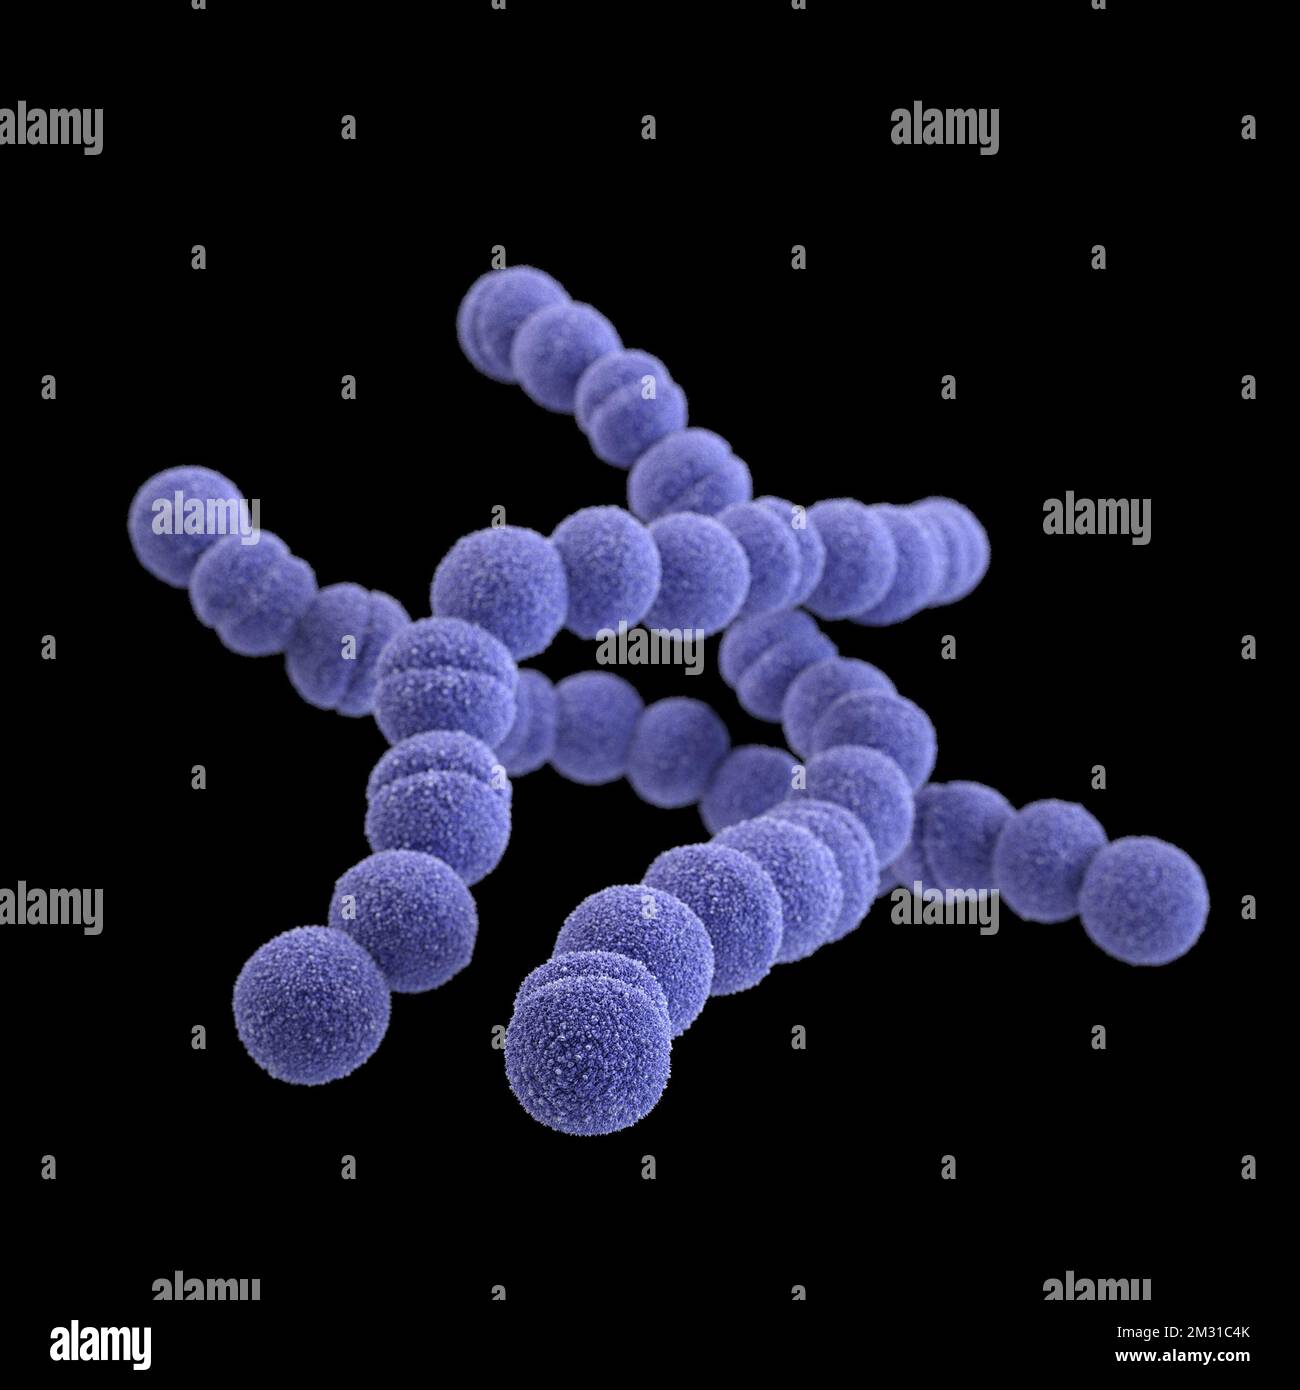 Batteri streptococchi del gruppo A. STREP A Streptococcus pyogenes è una specie di batterio gram-positivo, aerotolerante, appartenente al genere Streptococcus. Questi batteri sono extracellulari, e costituiti da cocci non motili e non spori che tendono a legarsi in catene. Questa illustrazione raffigurava un'immagine 3D, generata dal computer, di un gruppo di batteri Gram-positivi, Streptococcus pyogenes (Streptococcus gruppo A). La visualizzazione era basata su immagini al microscopio elettronico a scansione (SEM). Versione ottimizzata di un'immagine prodotta dai Centri statunitensi per il controllo e la prevenzione delle malattie / Credit CDC /J.Oosthuizen Foto Stock